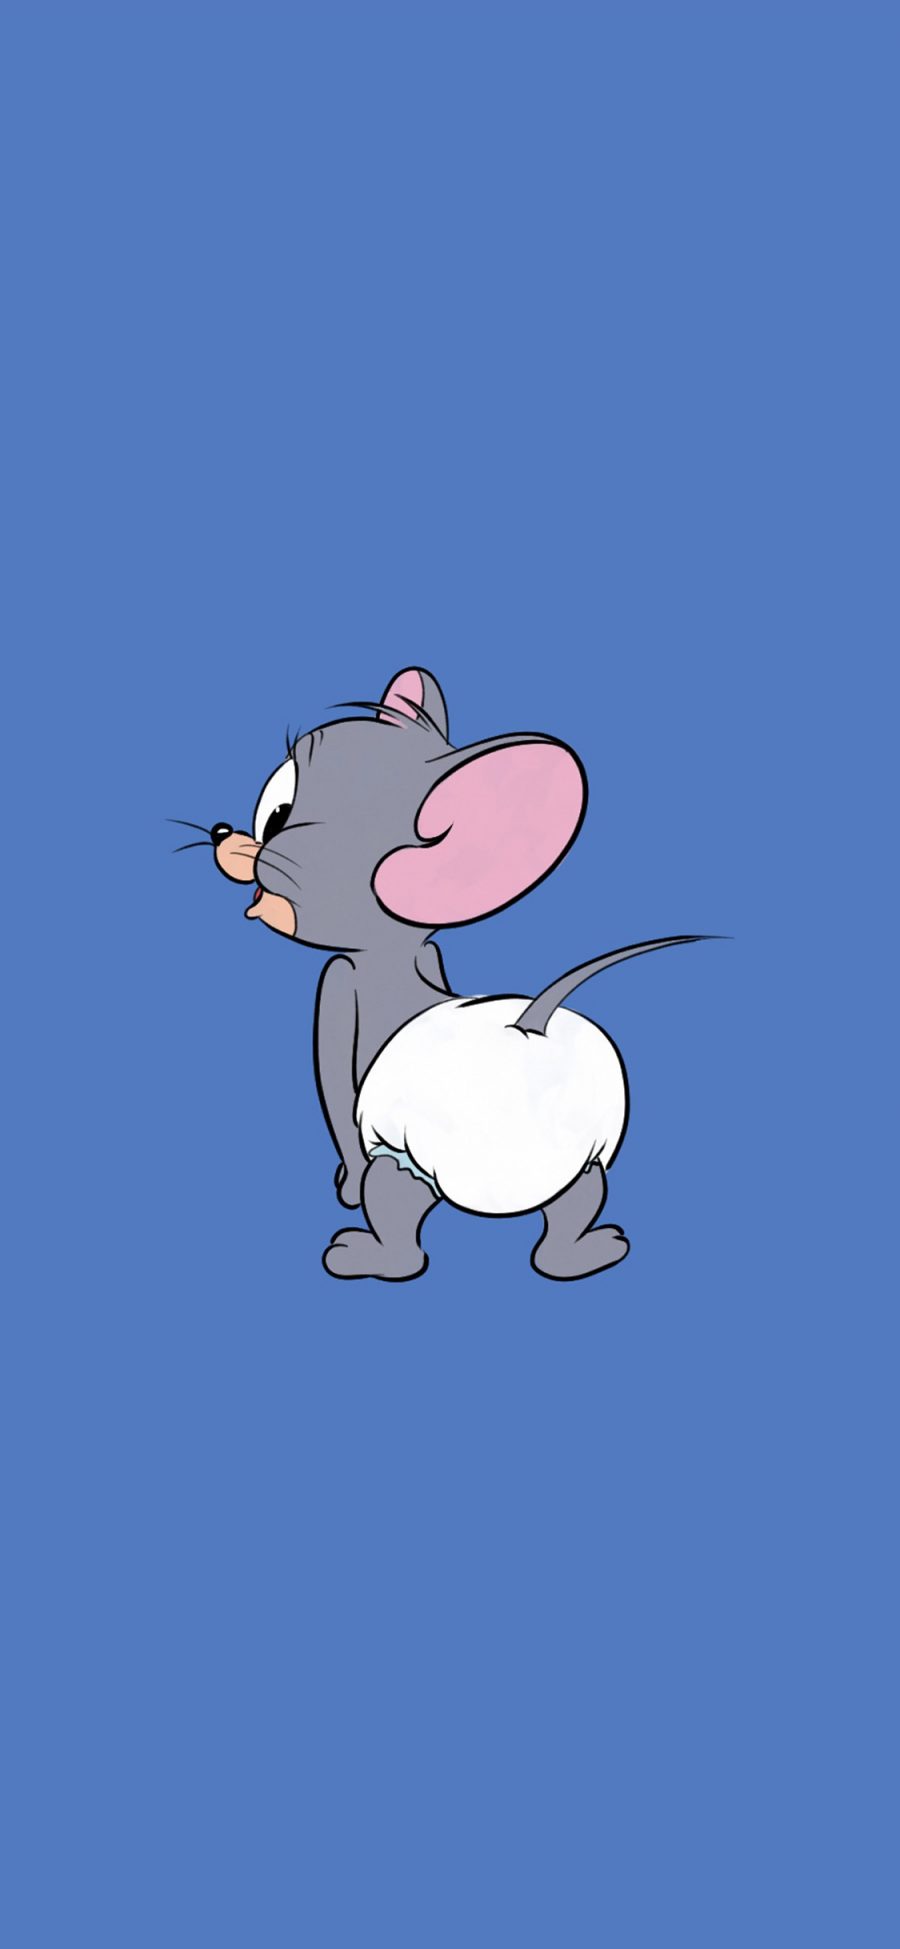 [2436×1125]猫和老鼠 蓝色 屁股 动画 可爱 苹果手机动漫壁纸图片